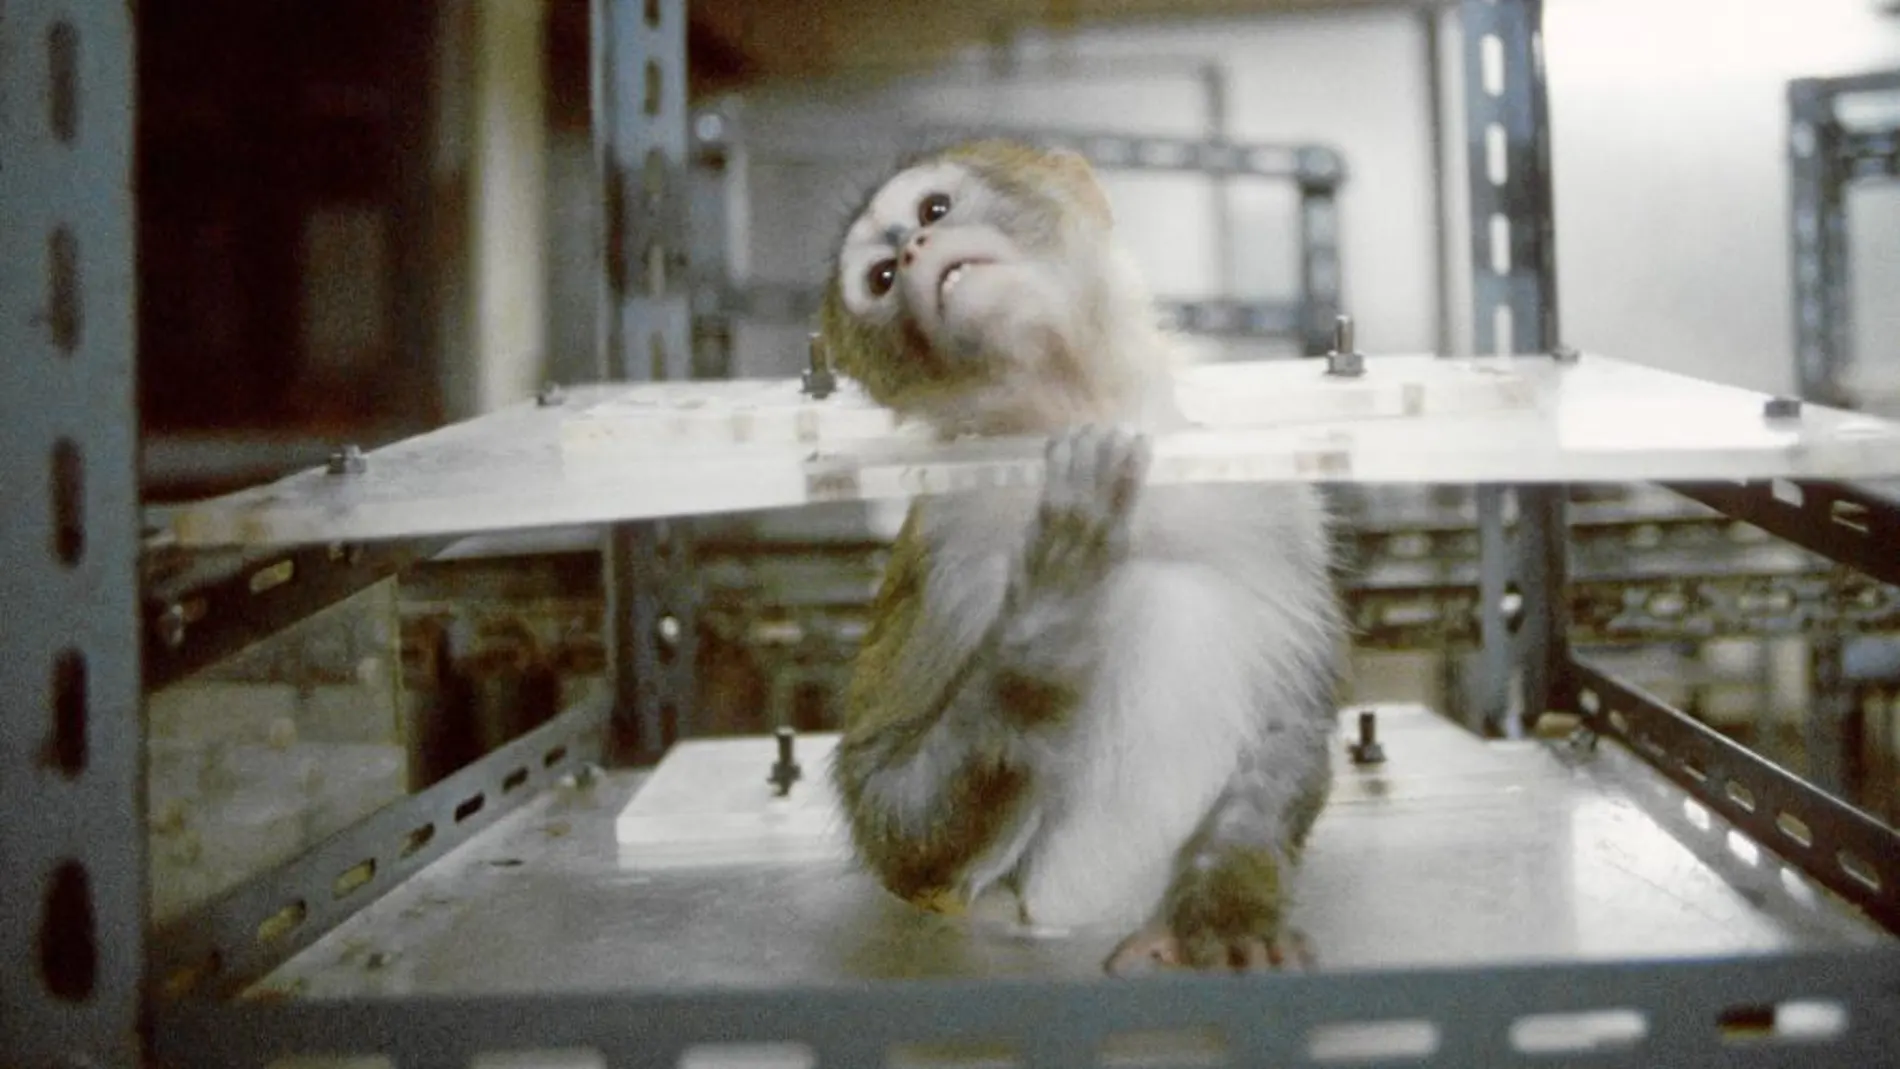 Los primates suelen emplearse para test de drogas y toxicidad